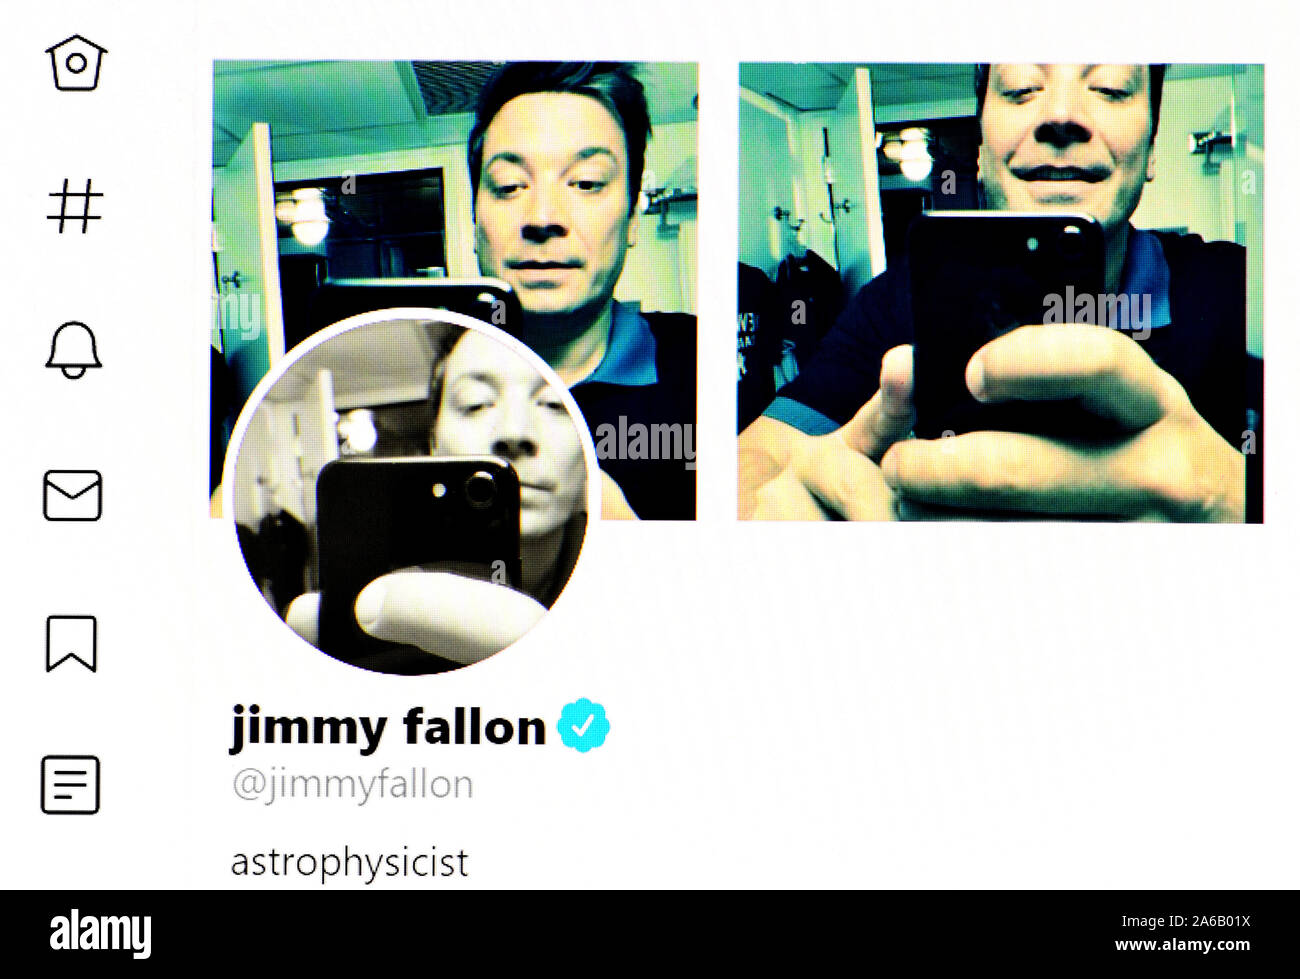 La page Twitter (Oct 2019) Jimmy Fallon - l'astrophysicien Banque D'Images